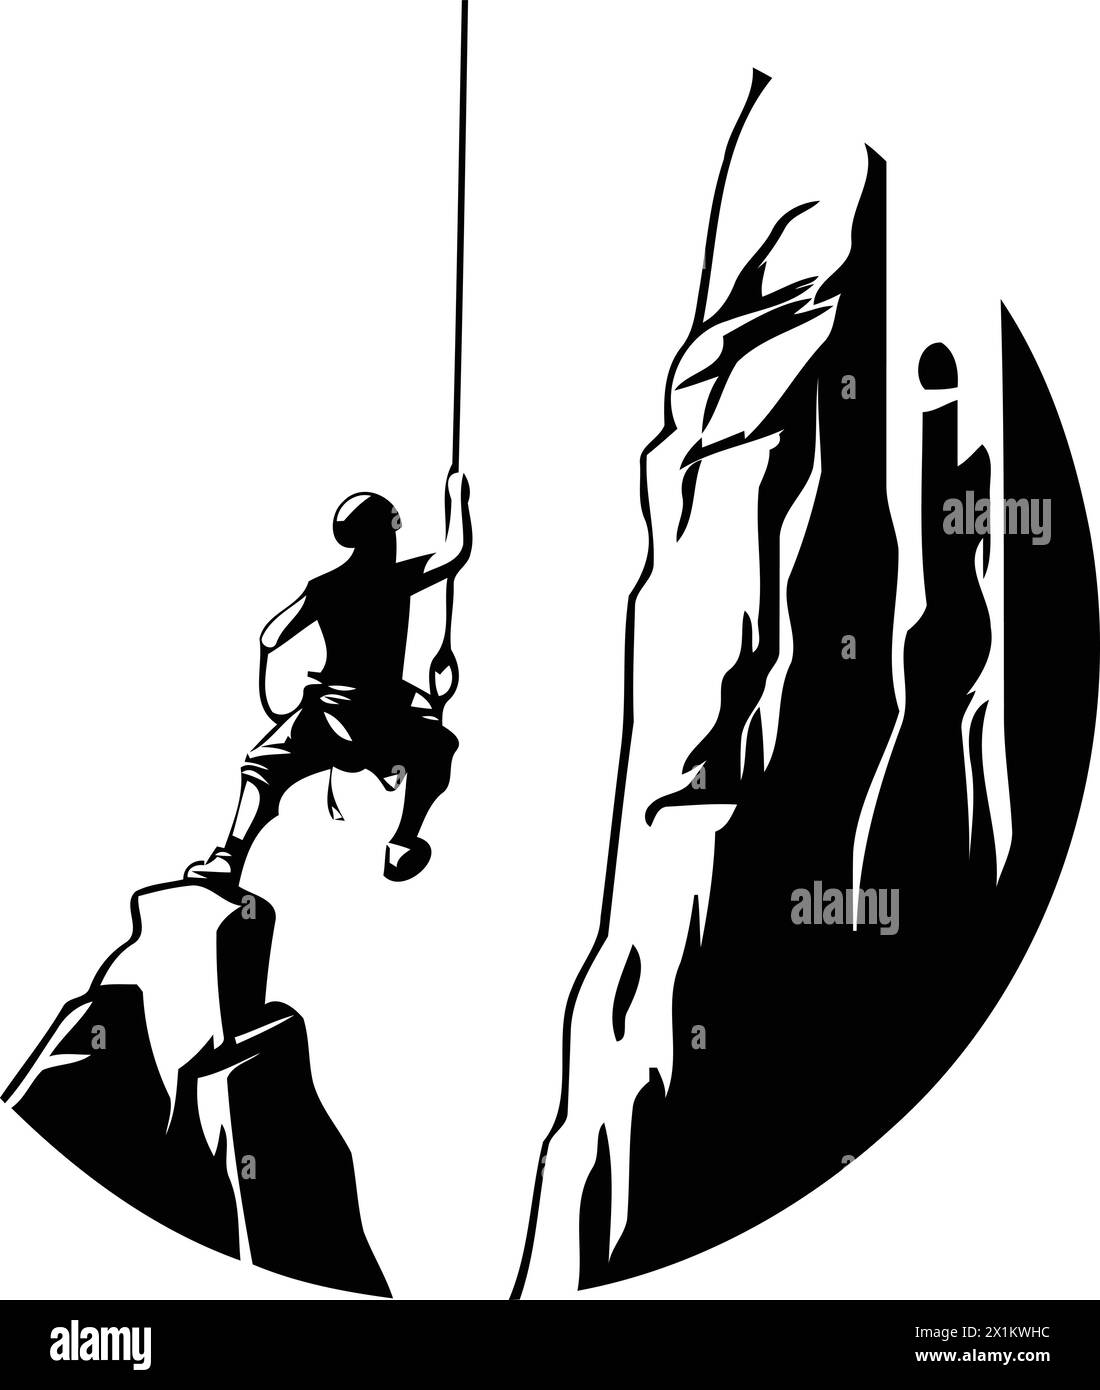 Kletterer klettern auf einer Klippe. Vektorillustration im Retro-Stil Stock Vektor